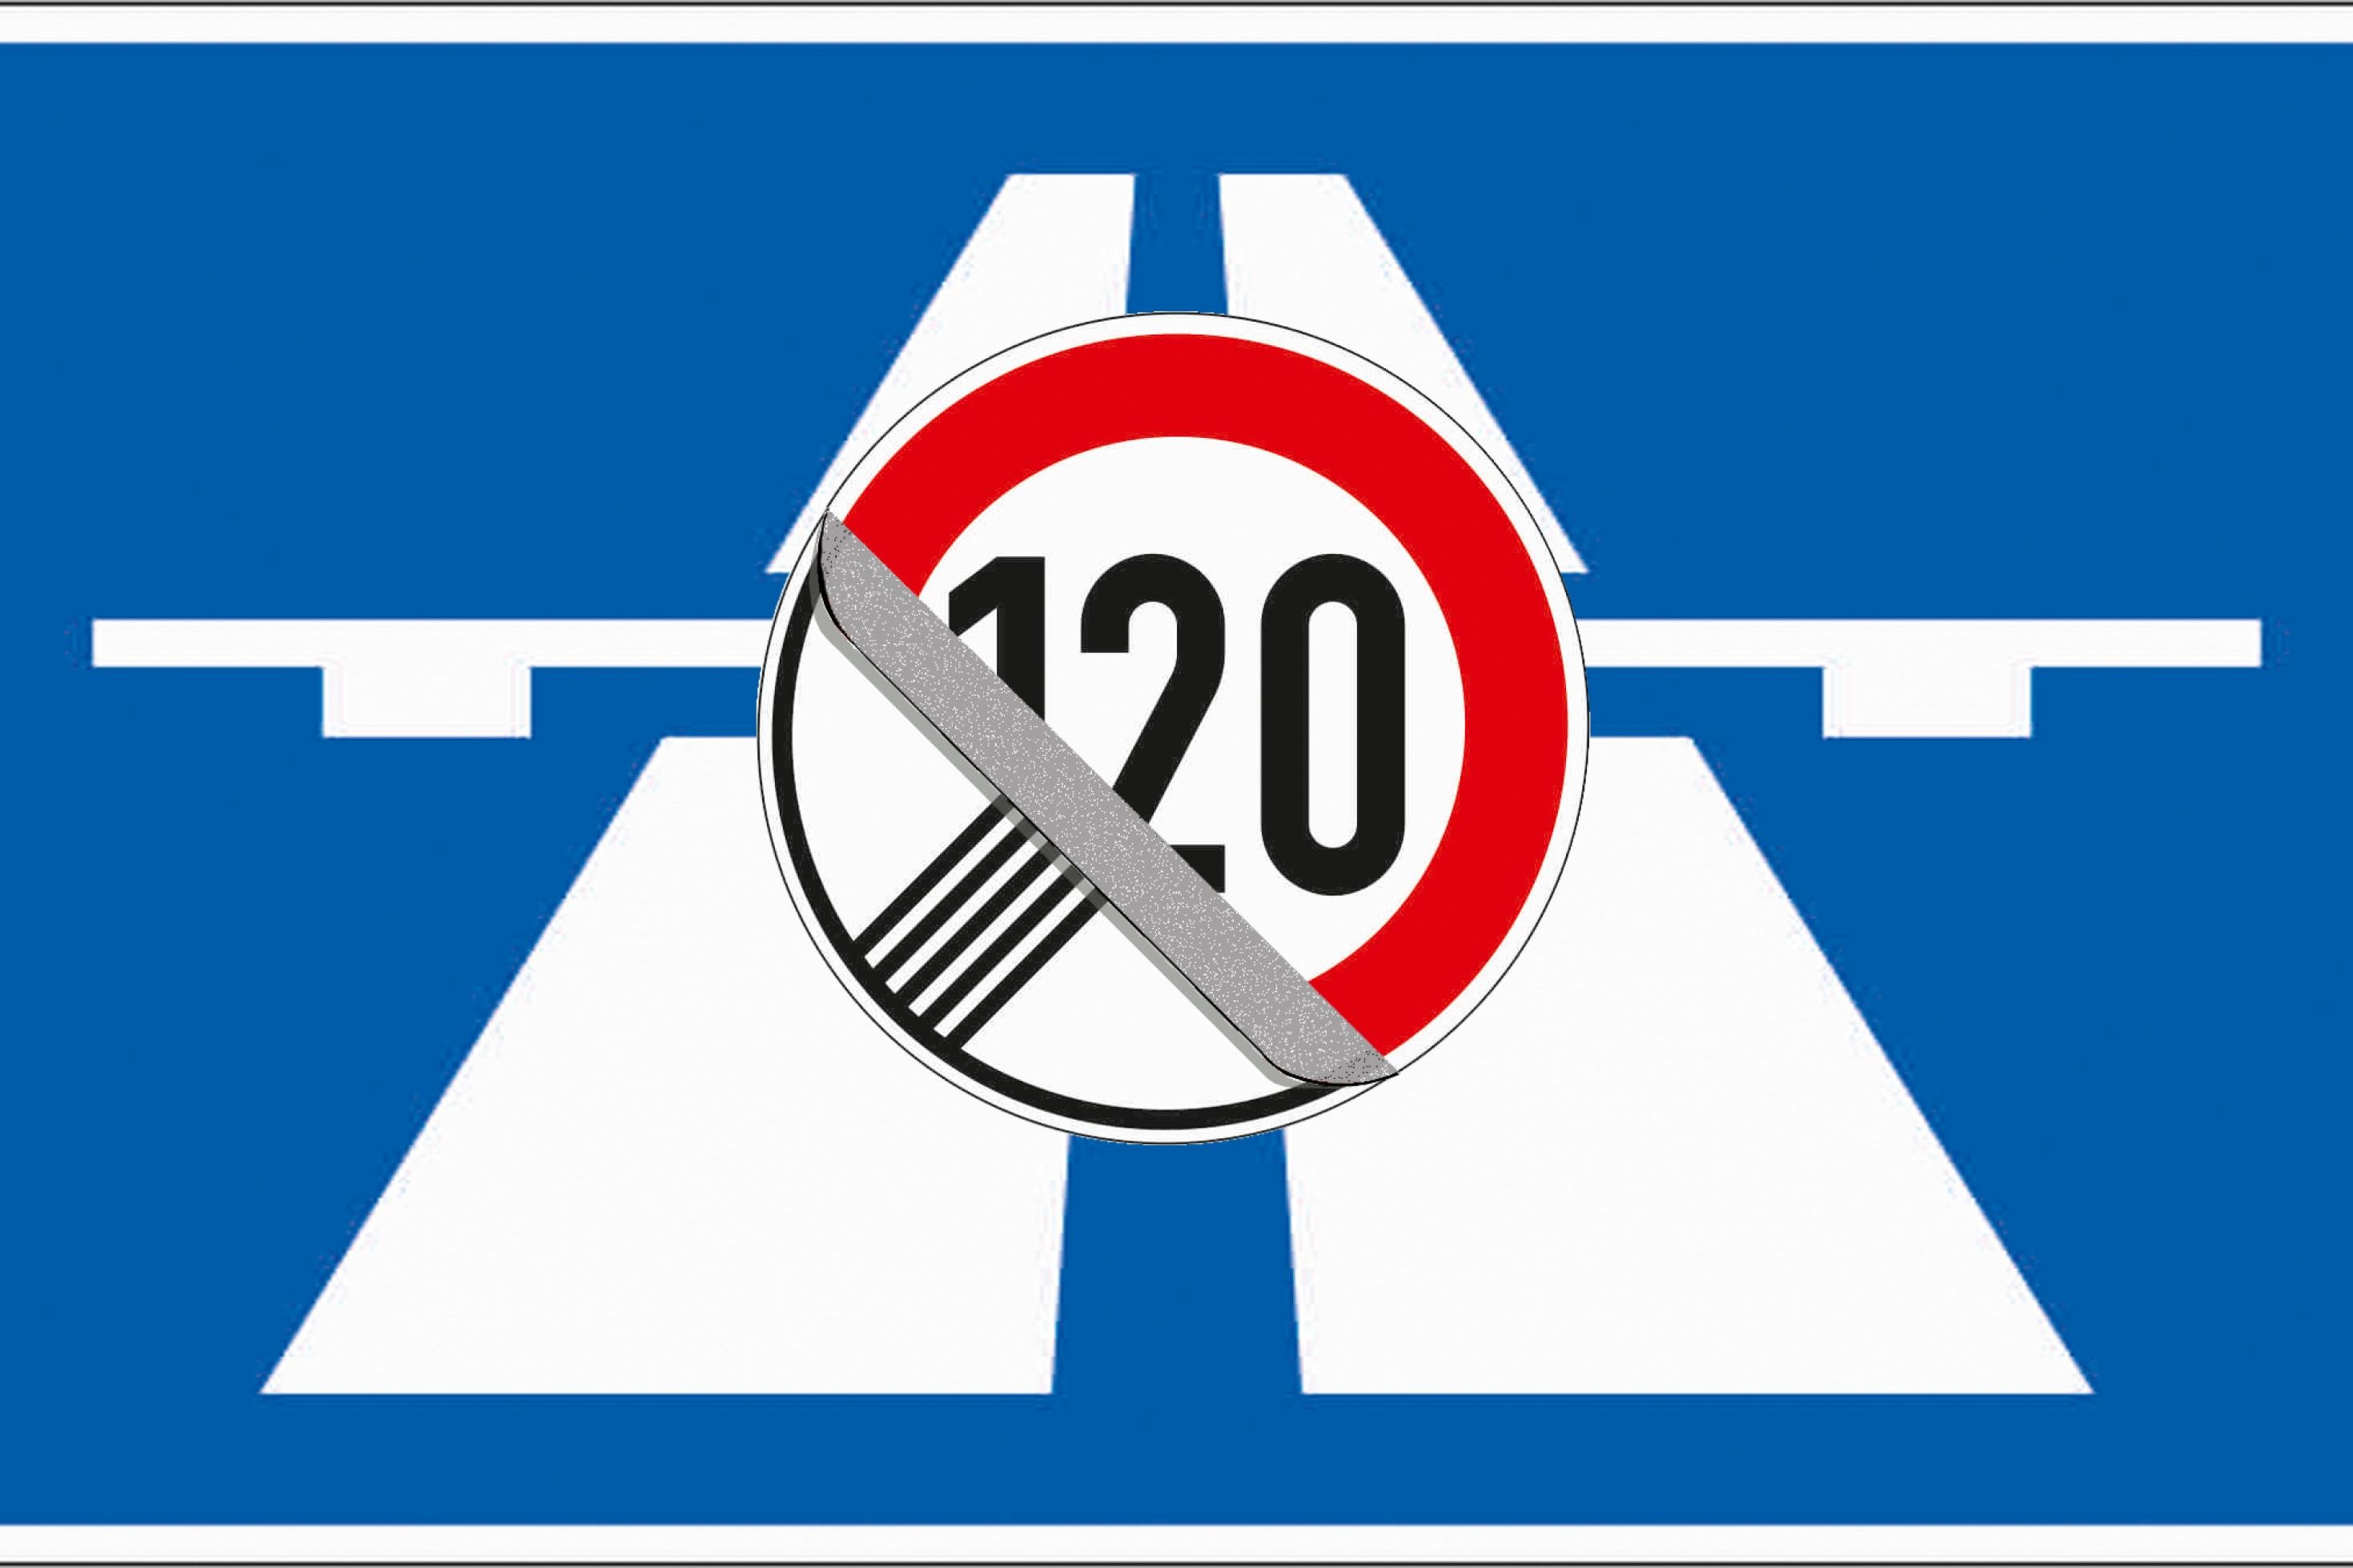 Eine Collage zeigt das blaue Schild der Autobahn, darüber wird Schild „Geschwindigkeitsbeschränkung aufgehoben“ wie ein nutzloser Aufkleber vom darunter liegenden 120-er Schild abgezogen.